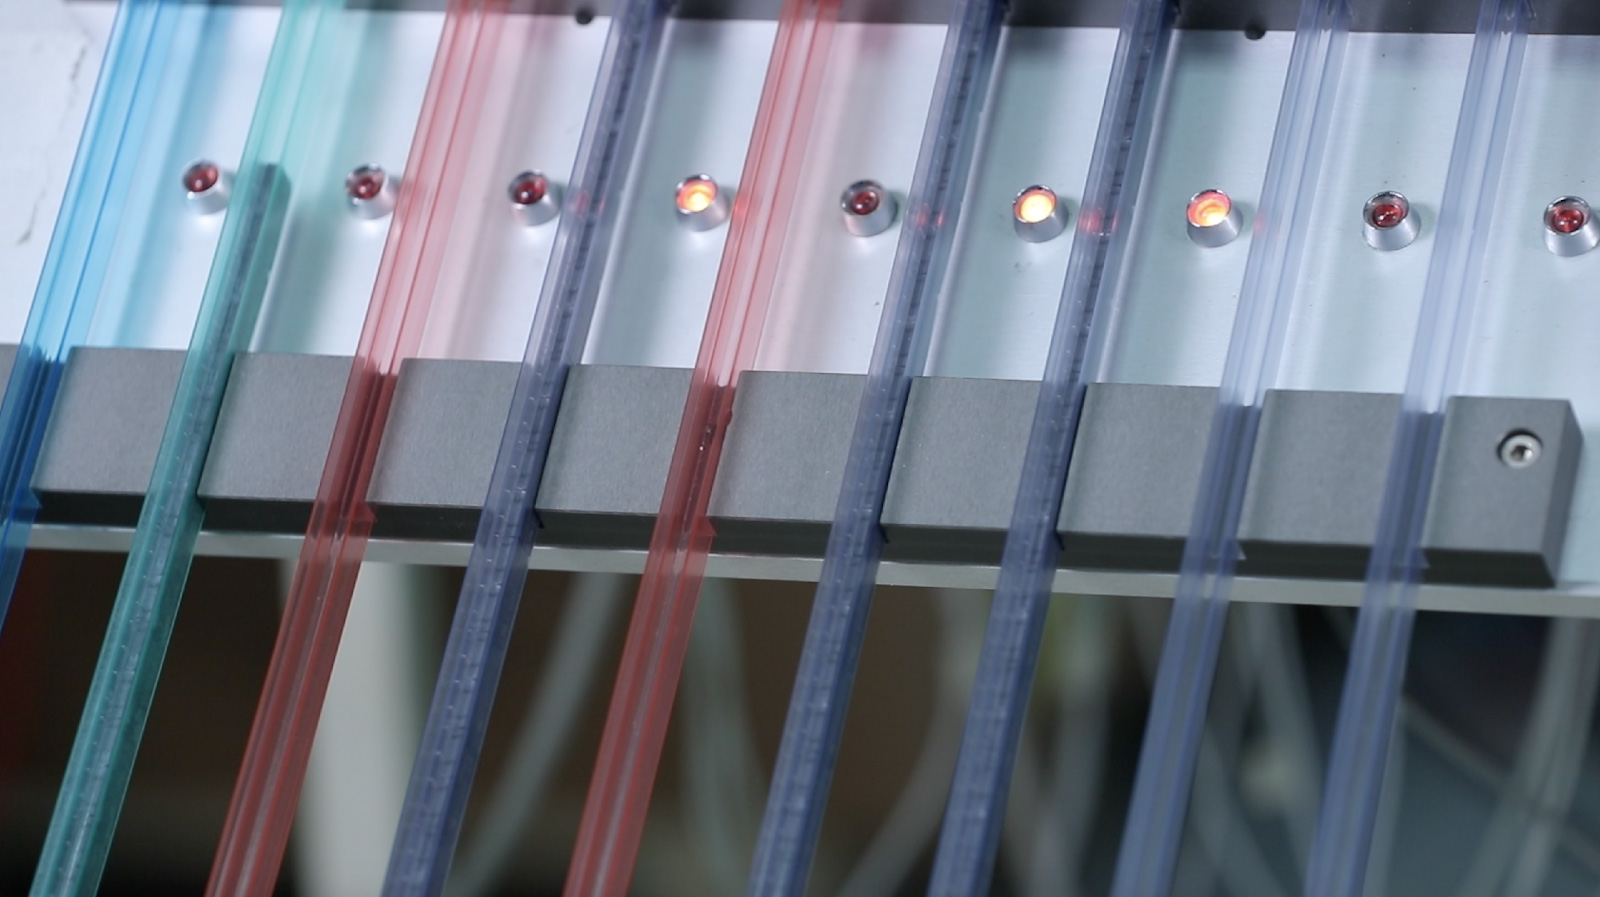 Relés de Estado Sólido são testados e classificados em tubos de cores diferentes.